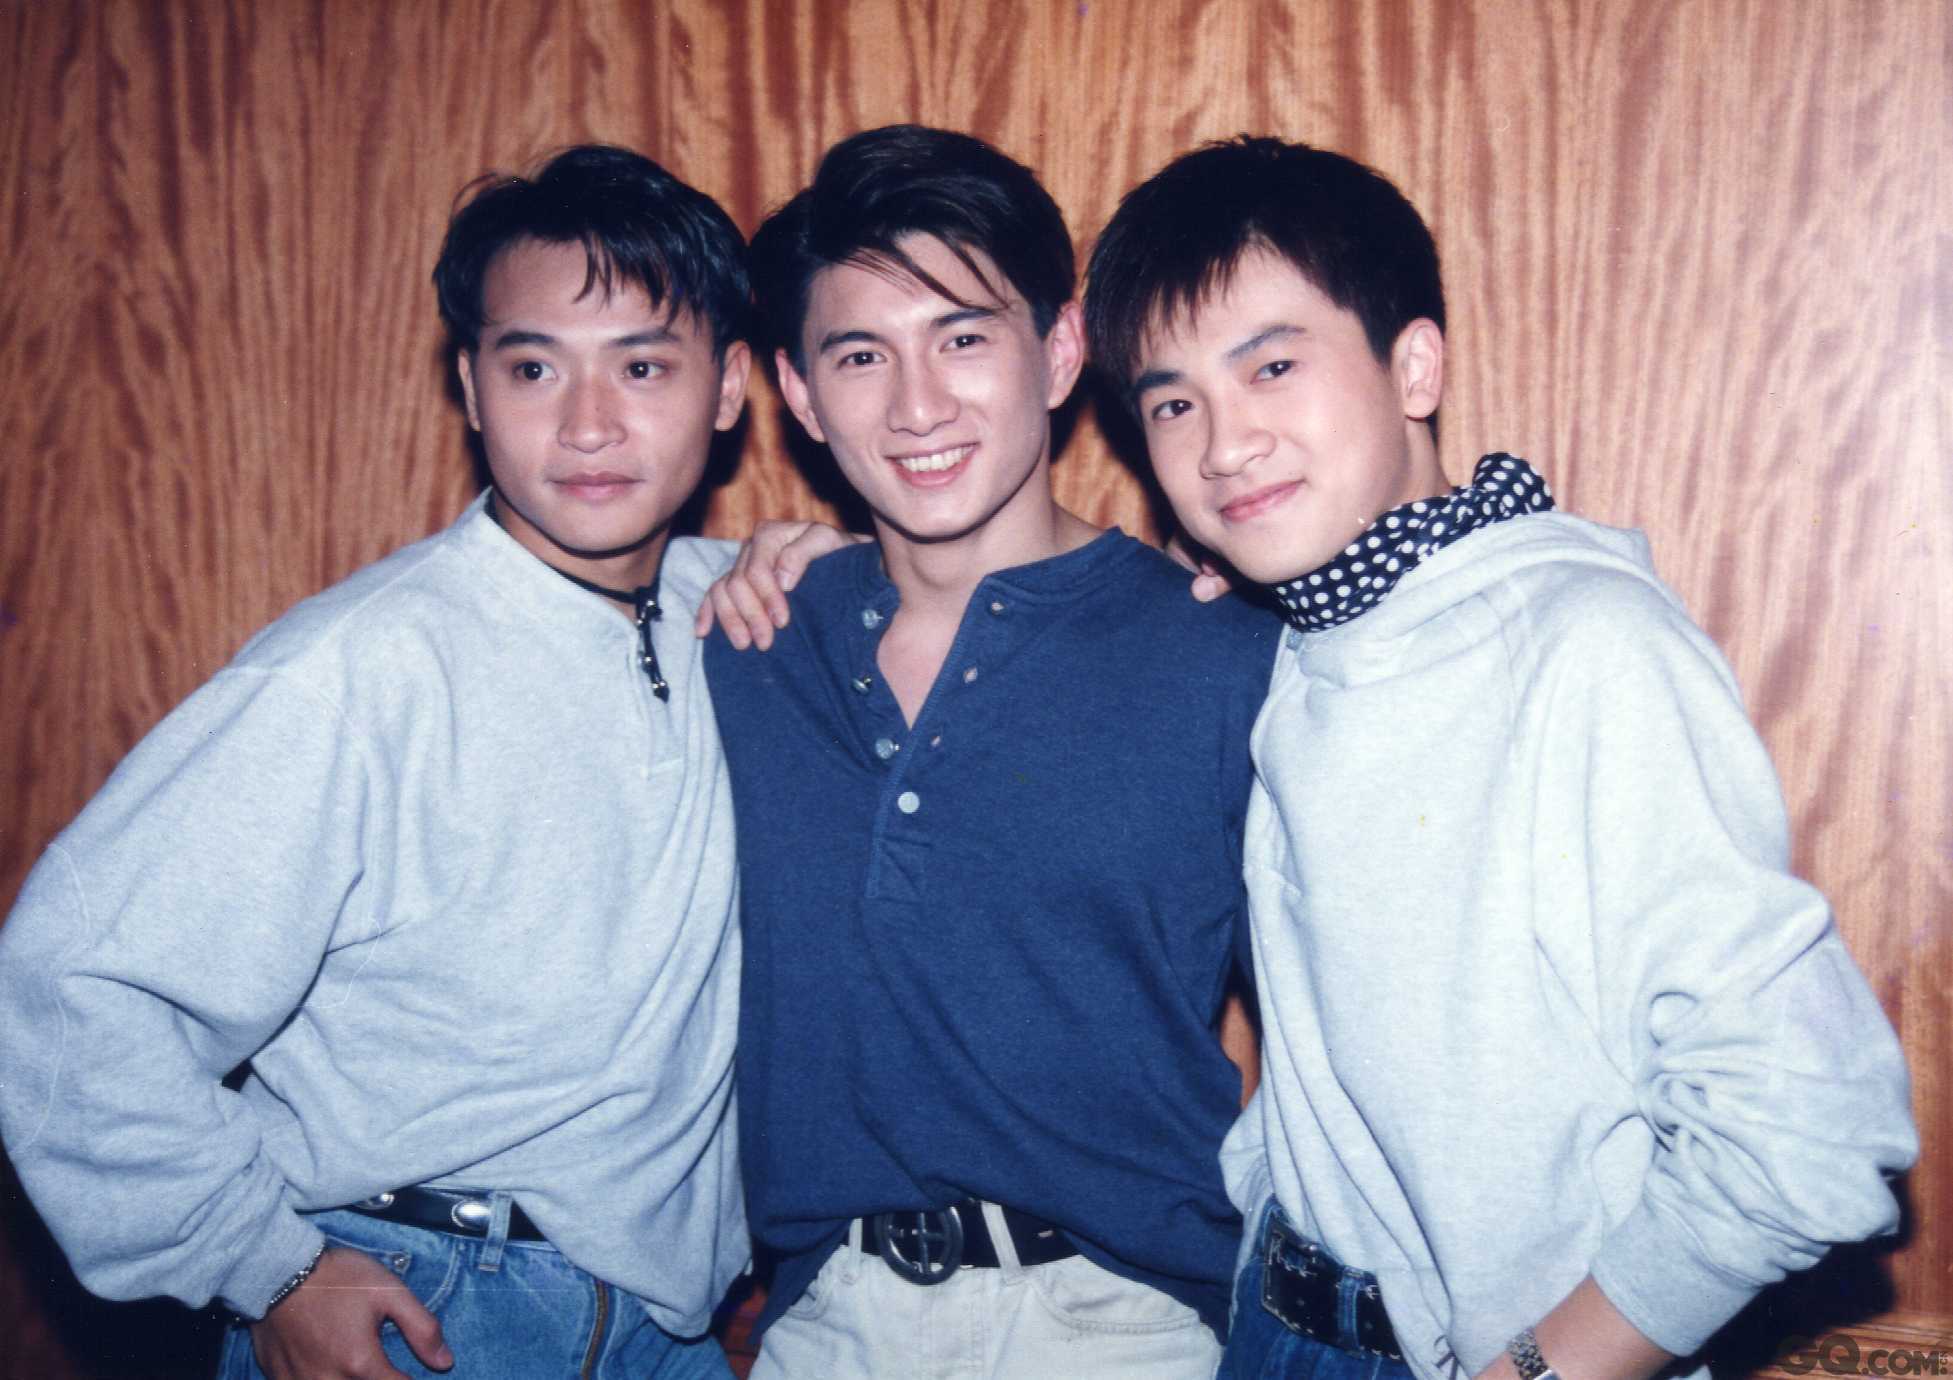 1988年，陈志朋作为小虎队成员“小帅虎”出道，随即这支青春洋溢的三人男子团体迅速成为华语乐坛最具影响力的偶像团体，见证和代表了一代人的青春岁月，然而因为三人先后应征入伍，“小虎队”被迫解散，也成为粉丝心中无法割舍的遗憾和回忆。